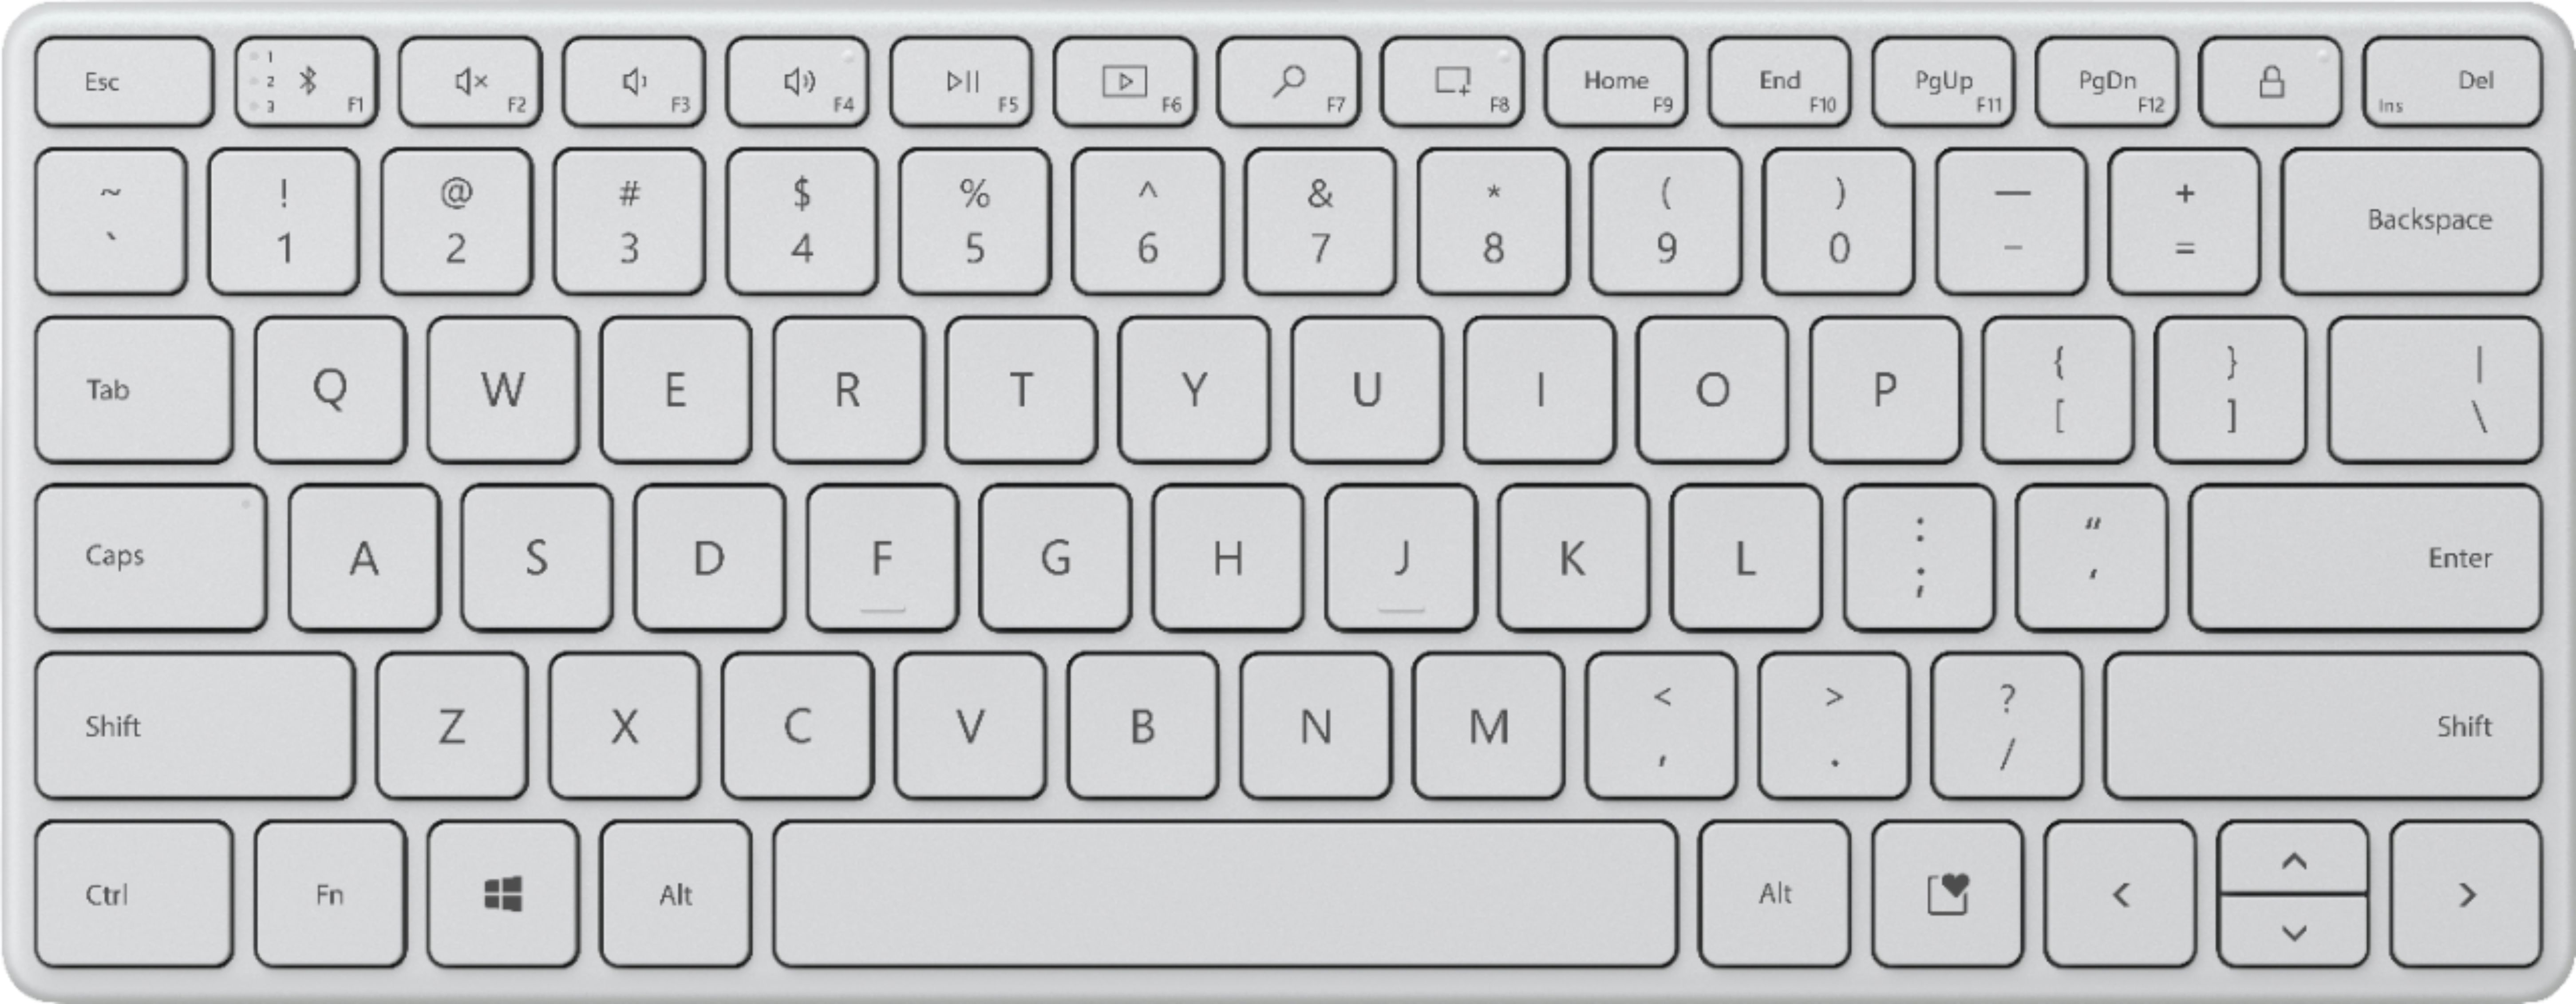 Microsoft Designer Compact Keyboard Glacier 21Y-00031 - Best Buy | Best Buy U.S.